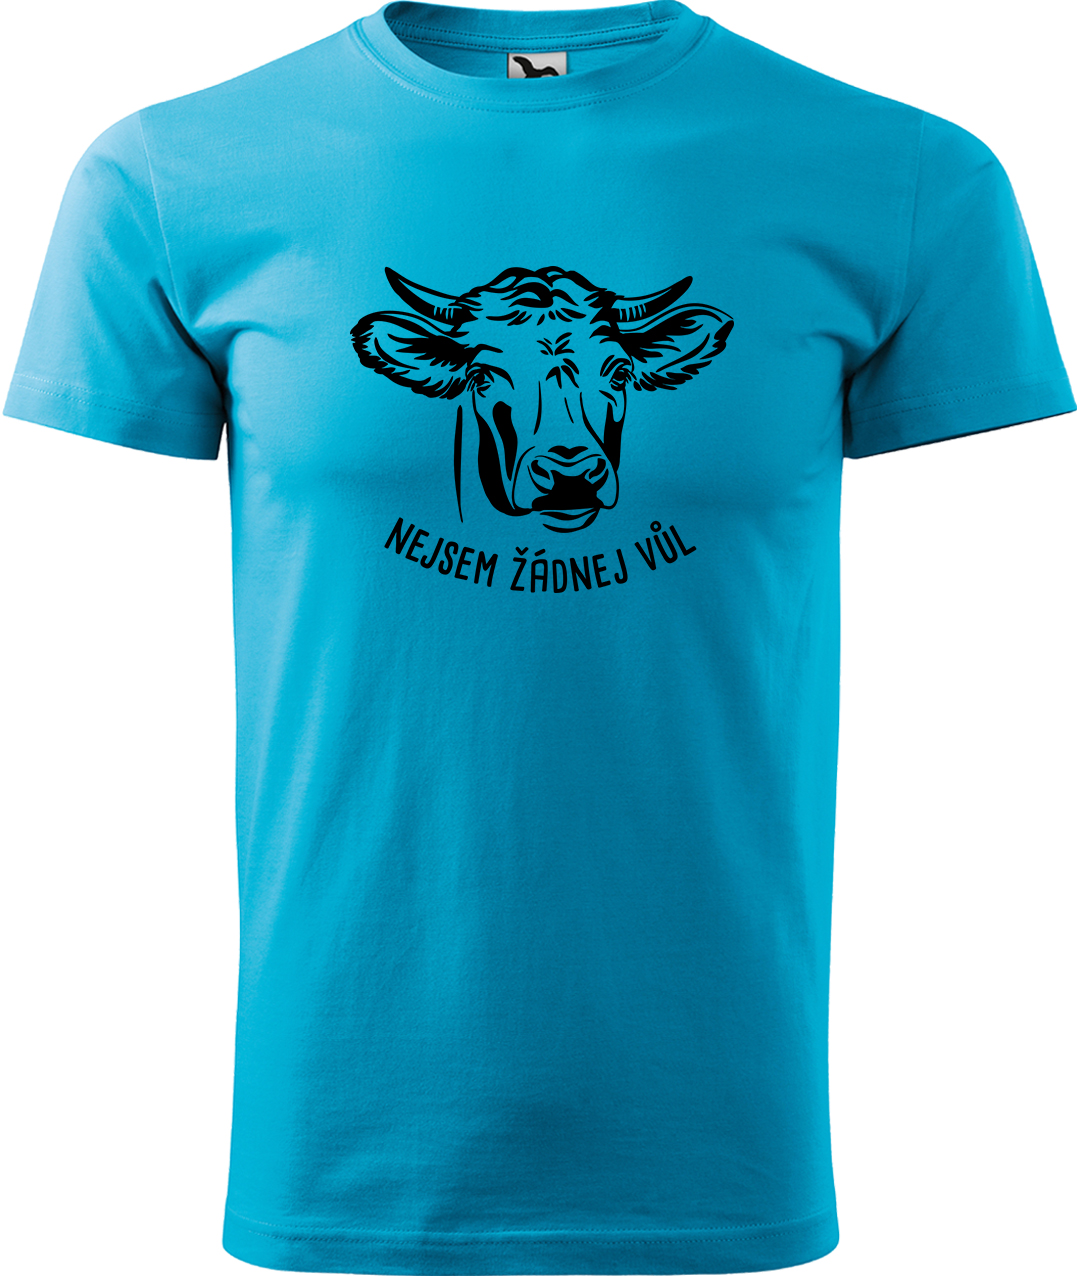 Pánské tričko s krávou - Nejsem žádnej vůl Velikost: XL, Barva: Tyrkysová (44), Střih: pánský